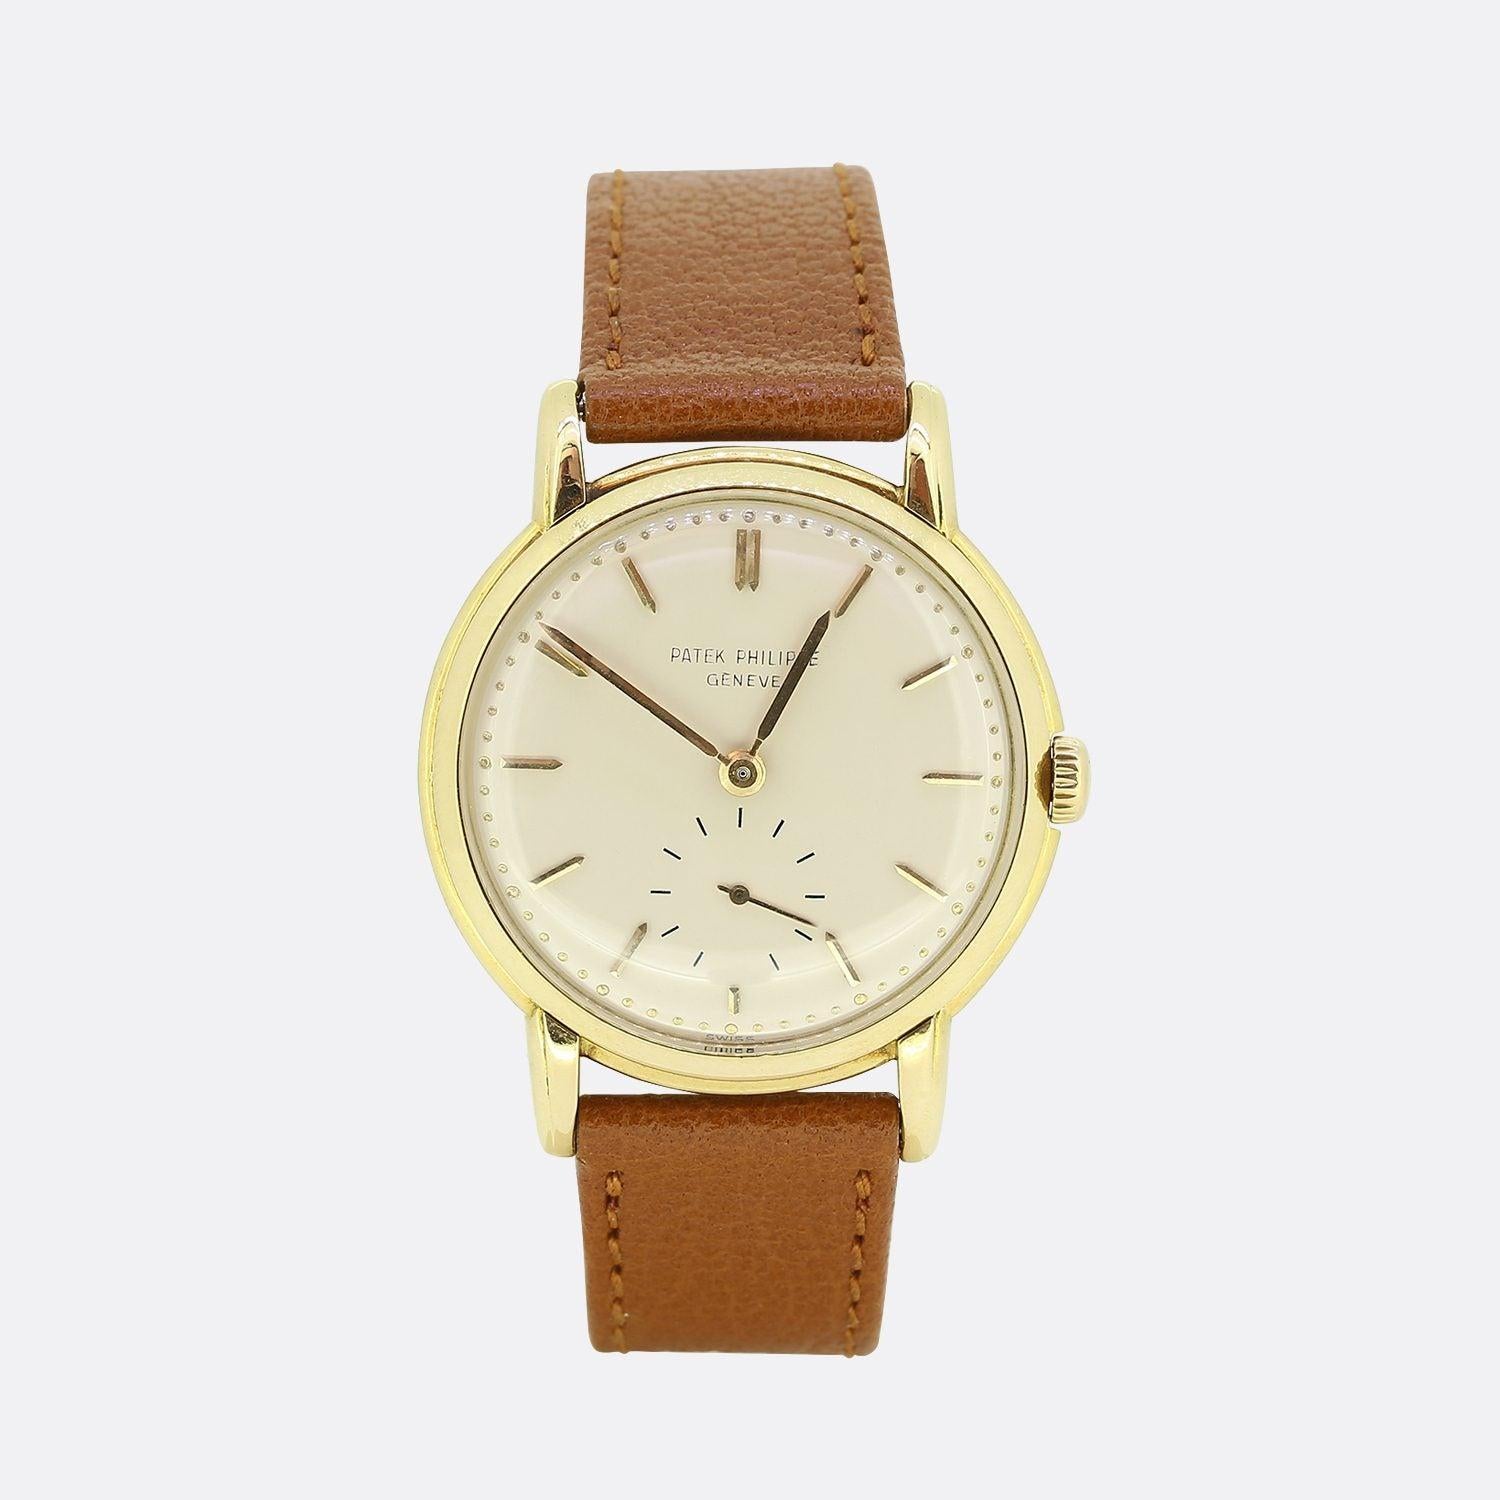 Dies ist ein Jahrgang 18ct Gelbgold Herren Patek Philippe Armbanduhr. Die Uhr stammt aus der Mitte bis Ende der 1950er Jahre und hat ein silbernes Zifferblatt mit goldenen Stunden- und Minutenzeigern und einem kleinen Sekundenzeiger bei 6 Uhr. Das